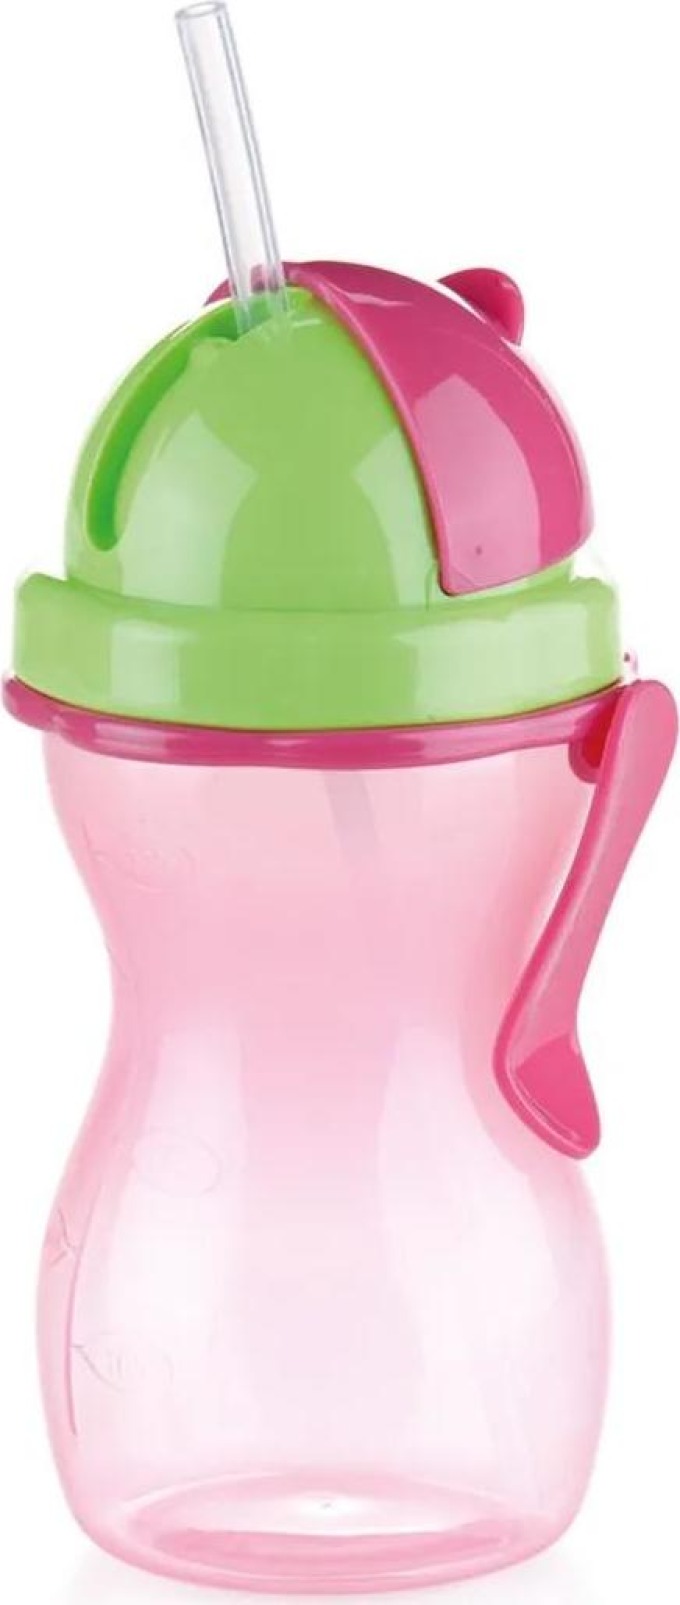 Dětská láhev s brčkem BAMBINI 300 ml, zelená, růžová